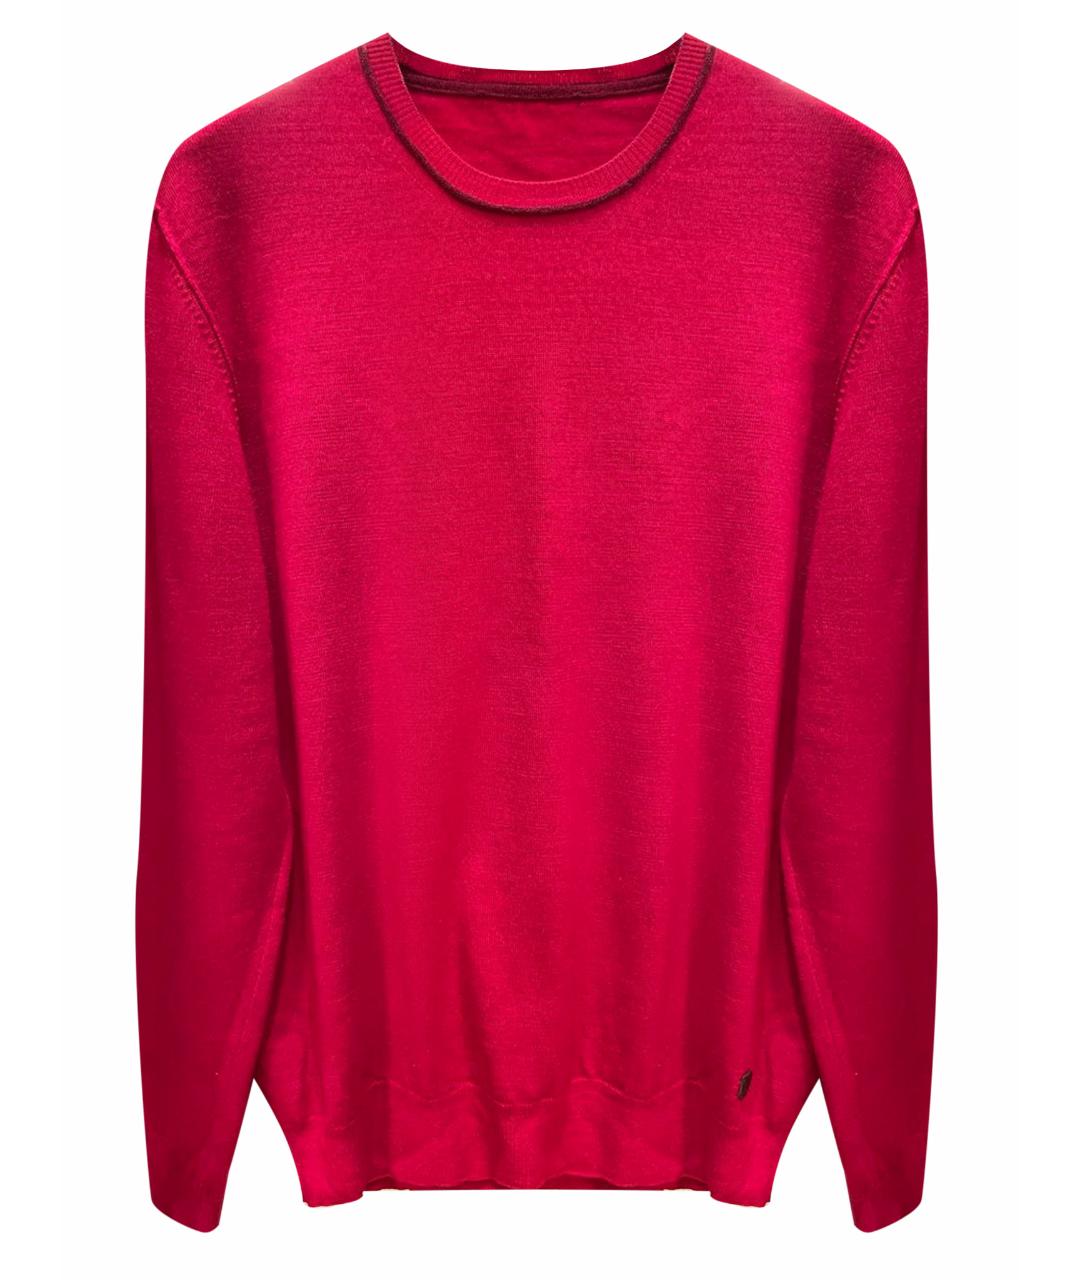 TRUSSARDI Красный шерстяной джемпер / свитер, фото 1